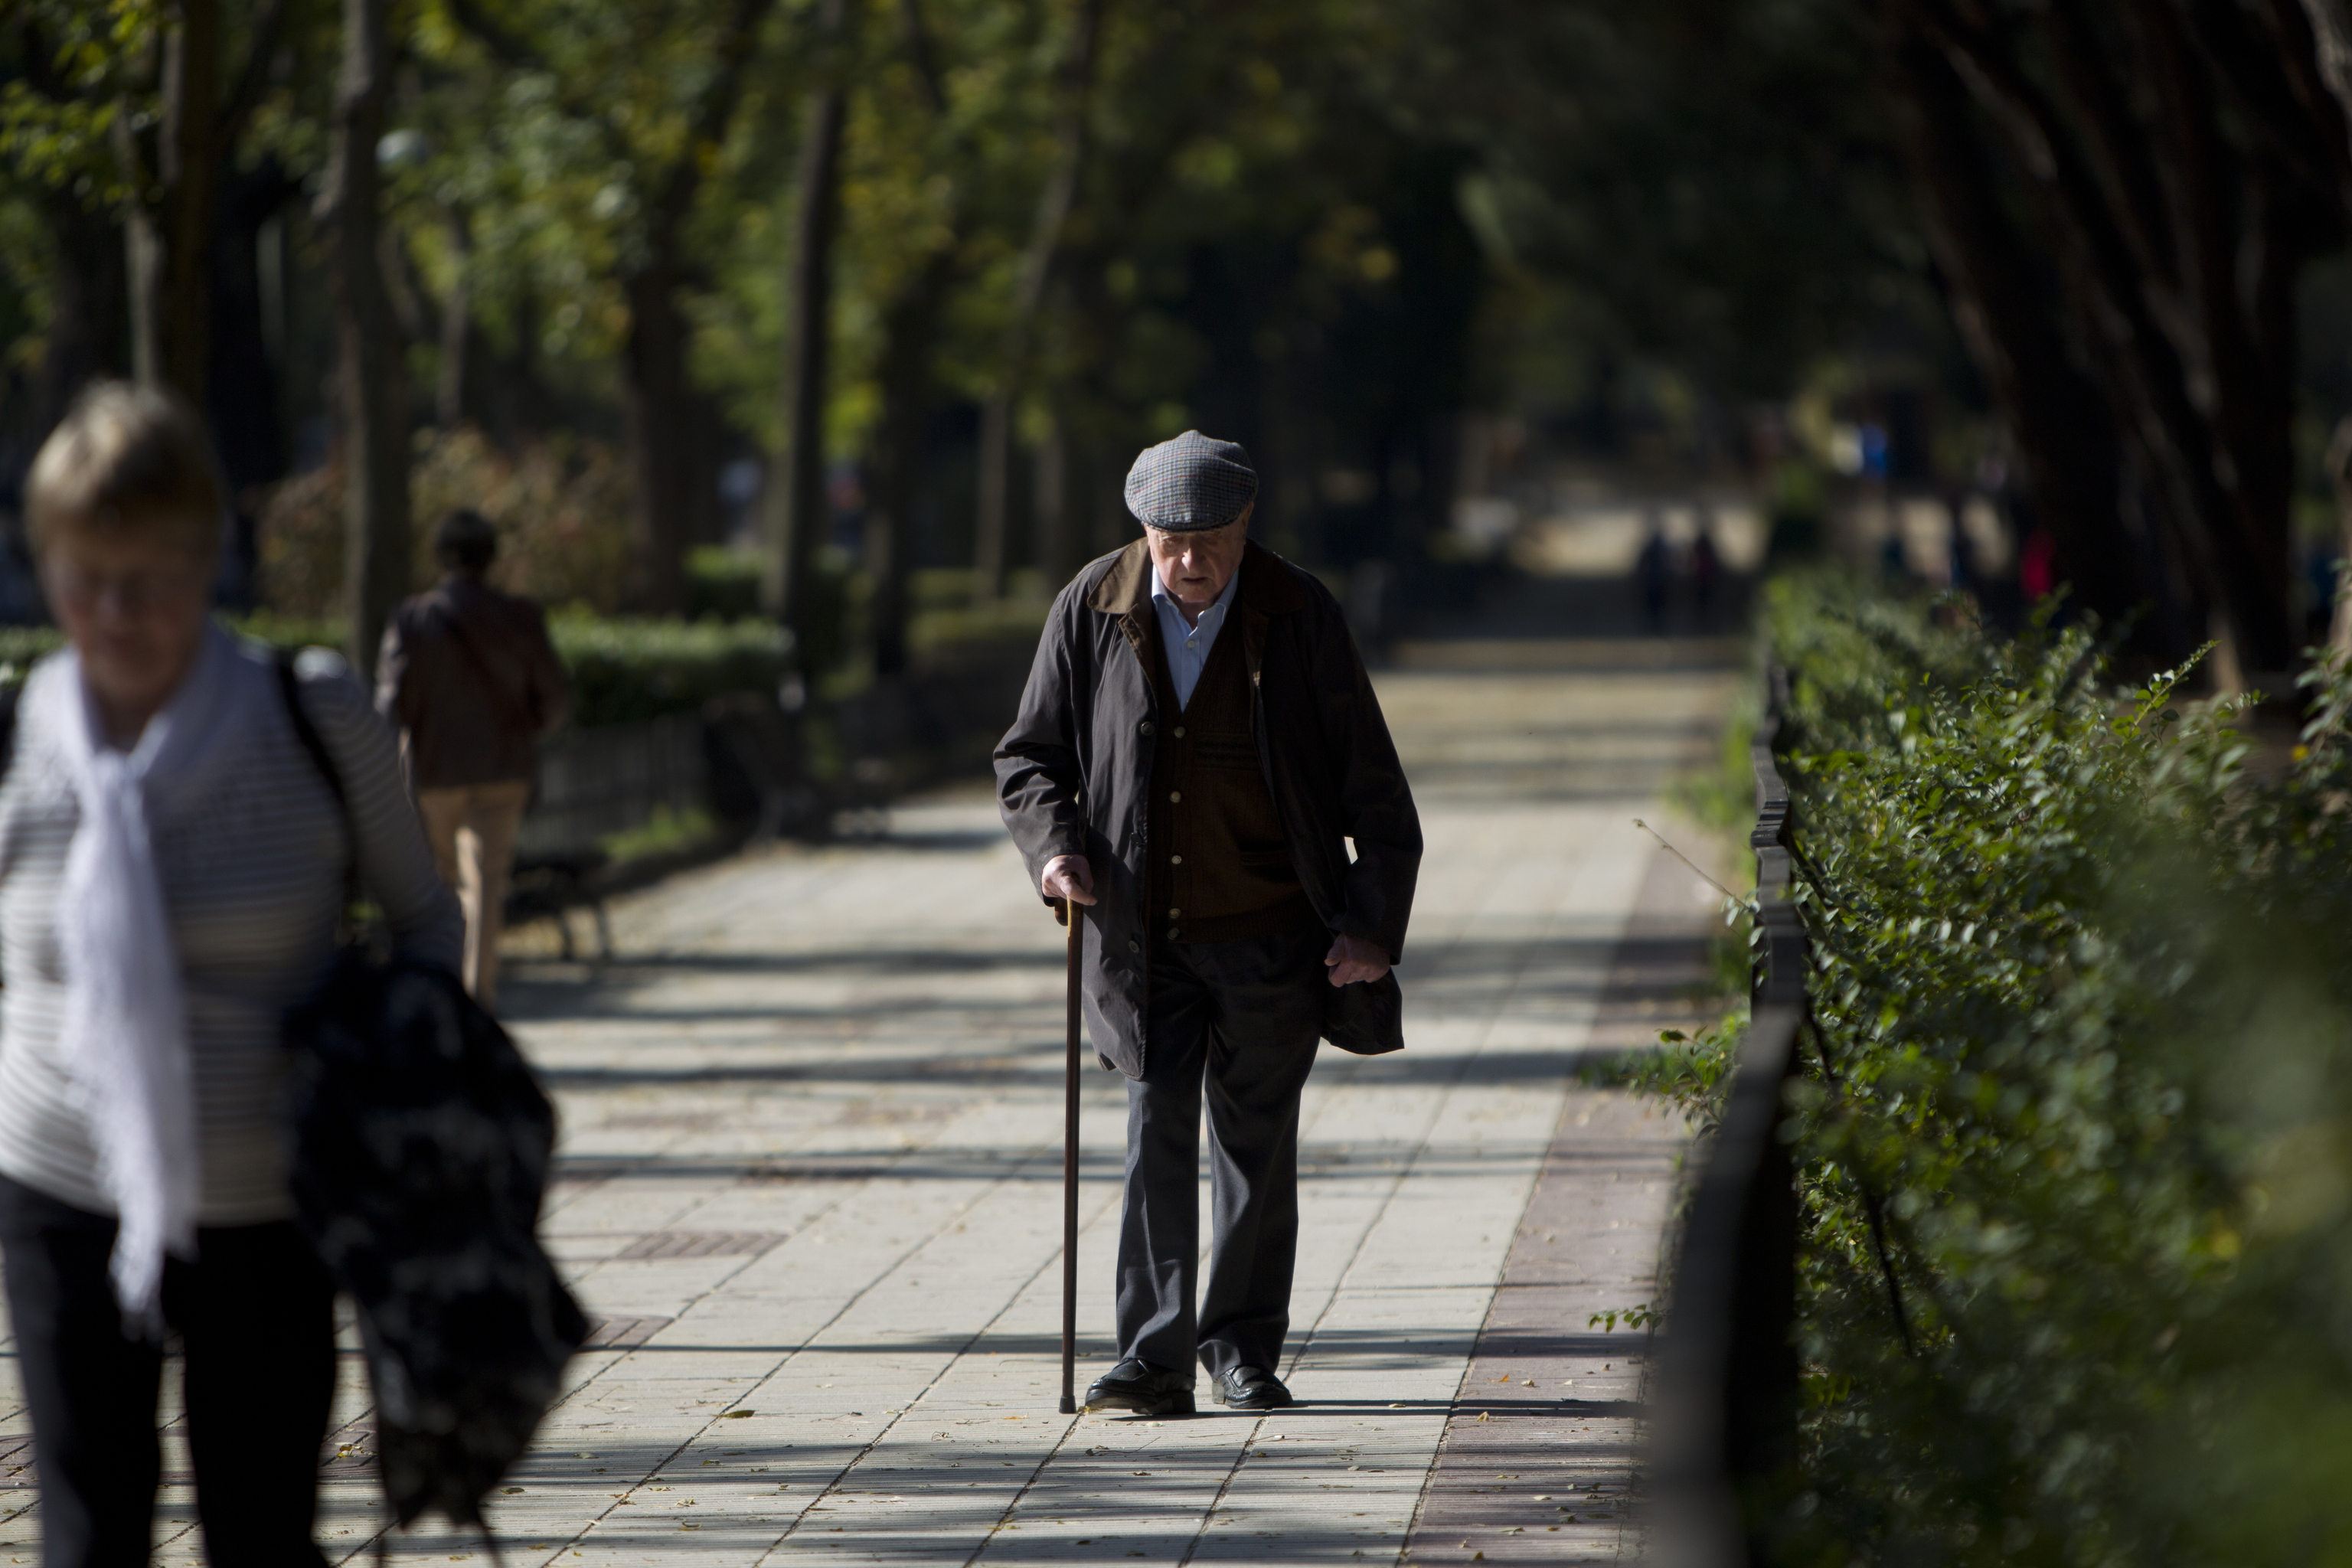 Gente de edad avanzada pasea por un parque, en una imagen de archivo.